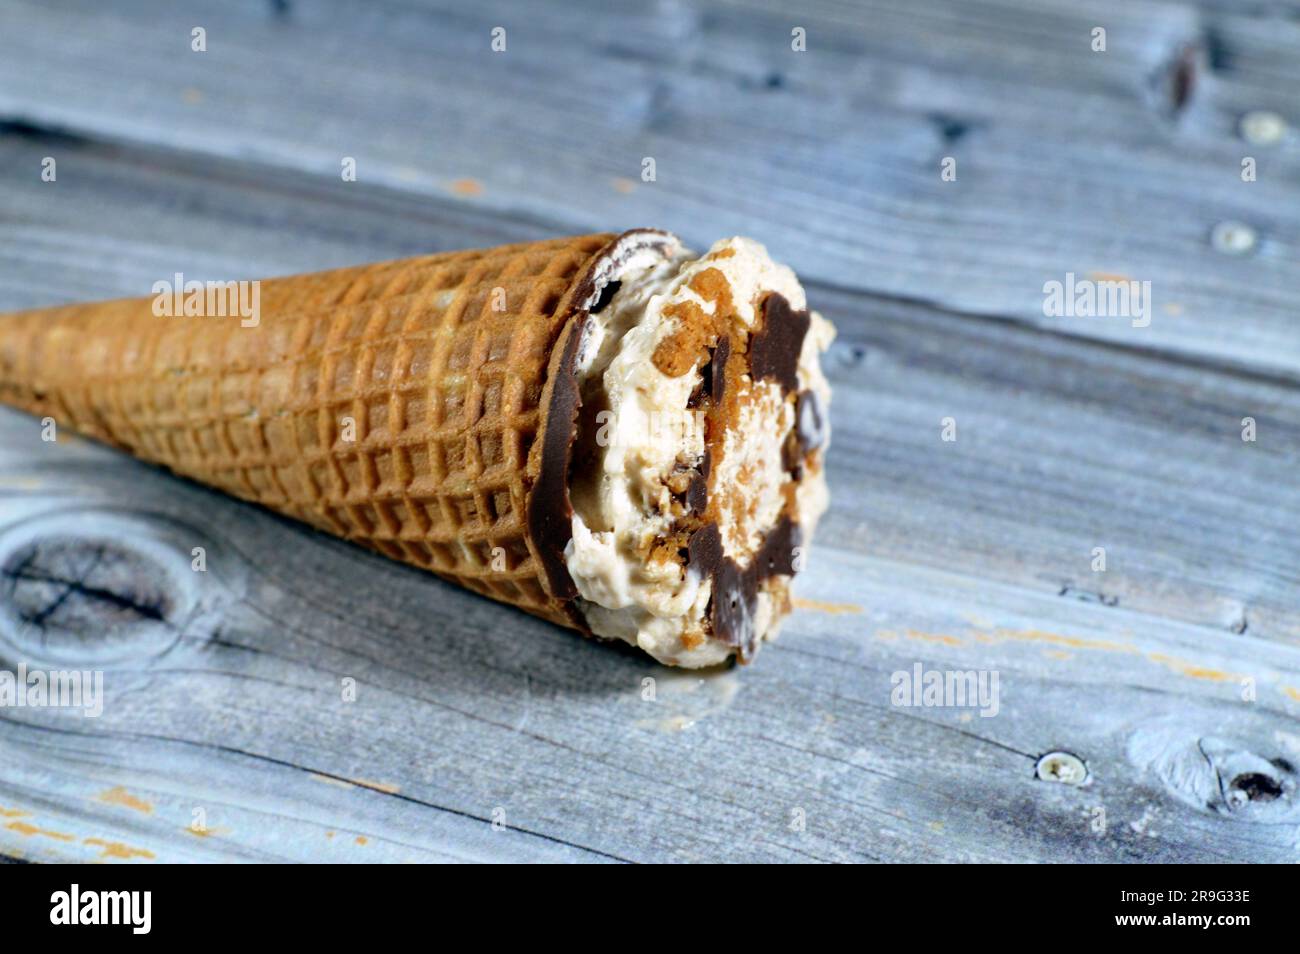 Karamellisierter Keks Eiscreme aus Kakao, Schokolade und Vanillekonus mit Keksstücken und Nüssen in knusprigen Waffelkonus, Schmelzen von kaltem Eis Stockfoto